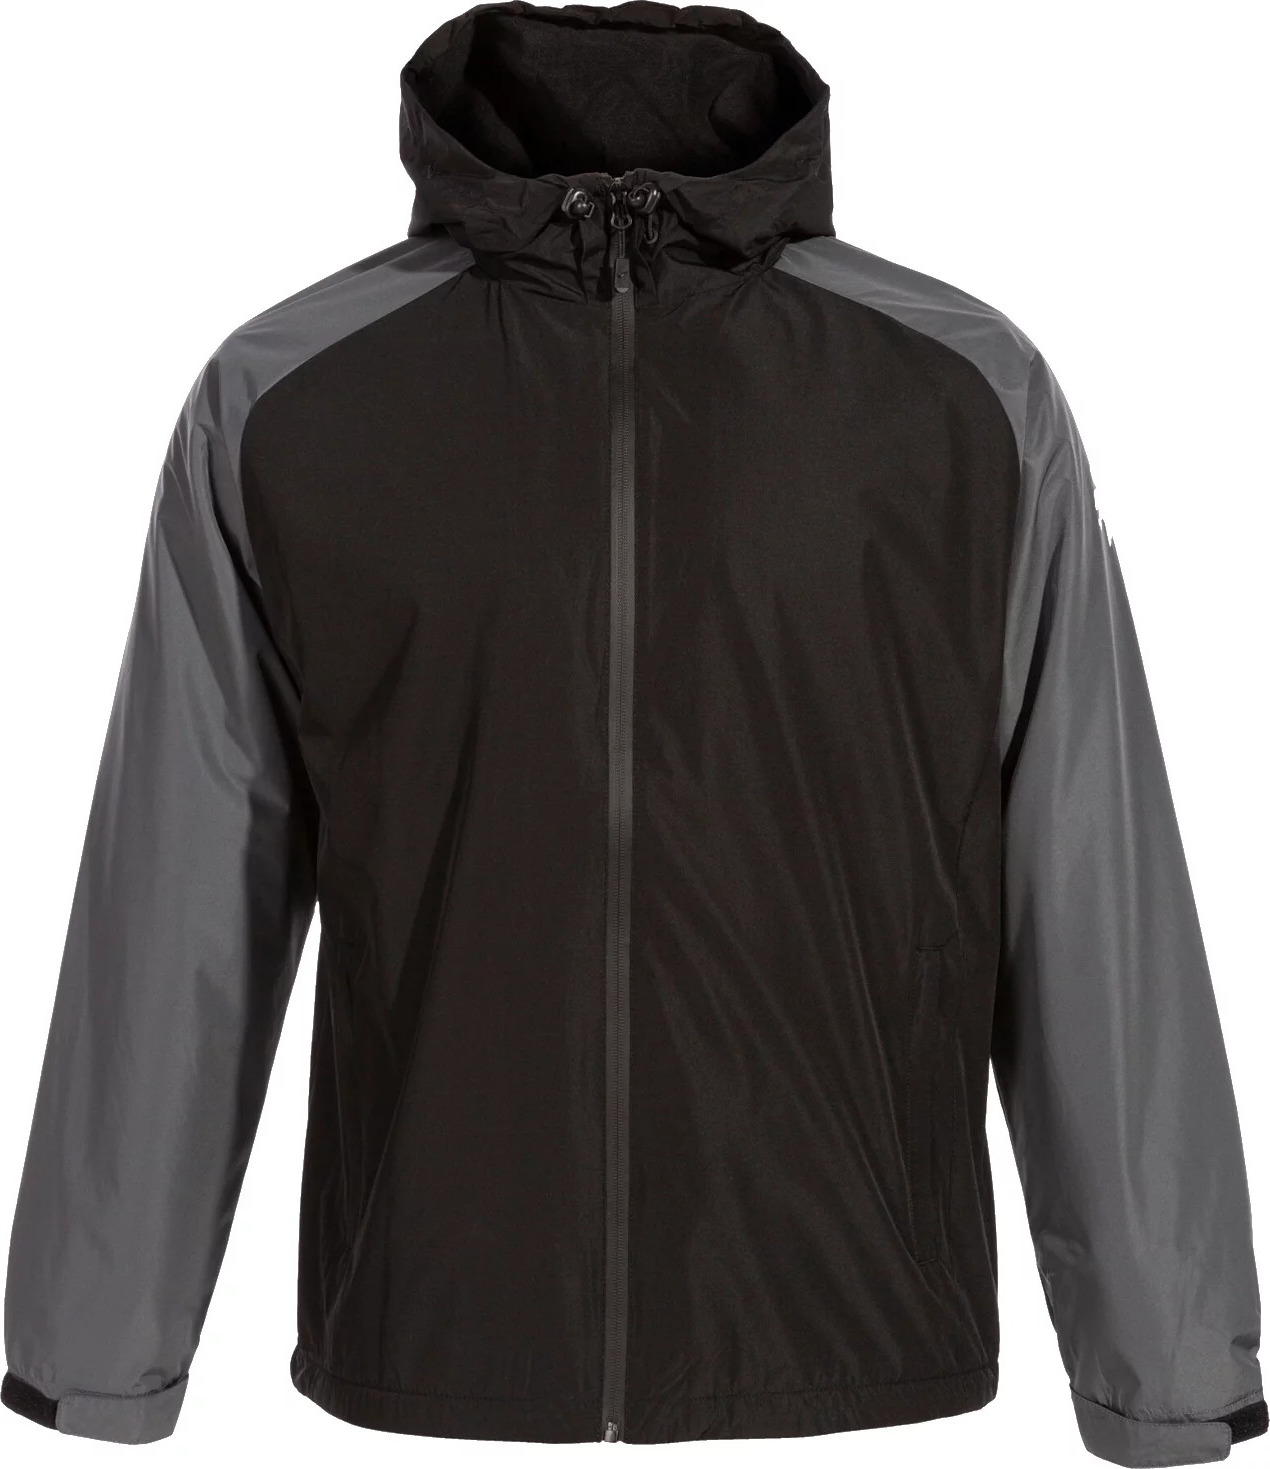 Černo-šedá pánská větrová bunda Joma Explorer Rain Jacket 103014-110 Velikost: L